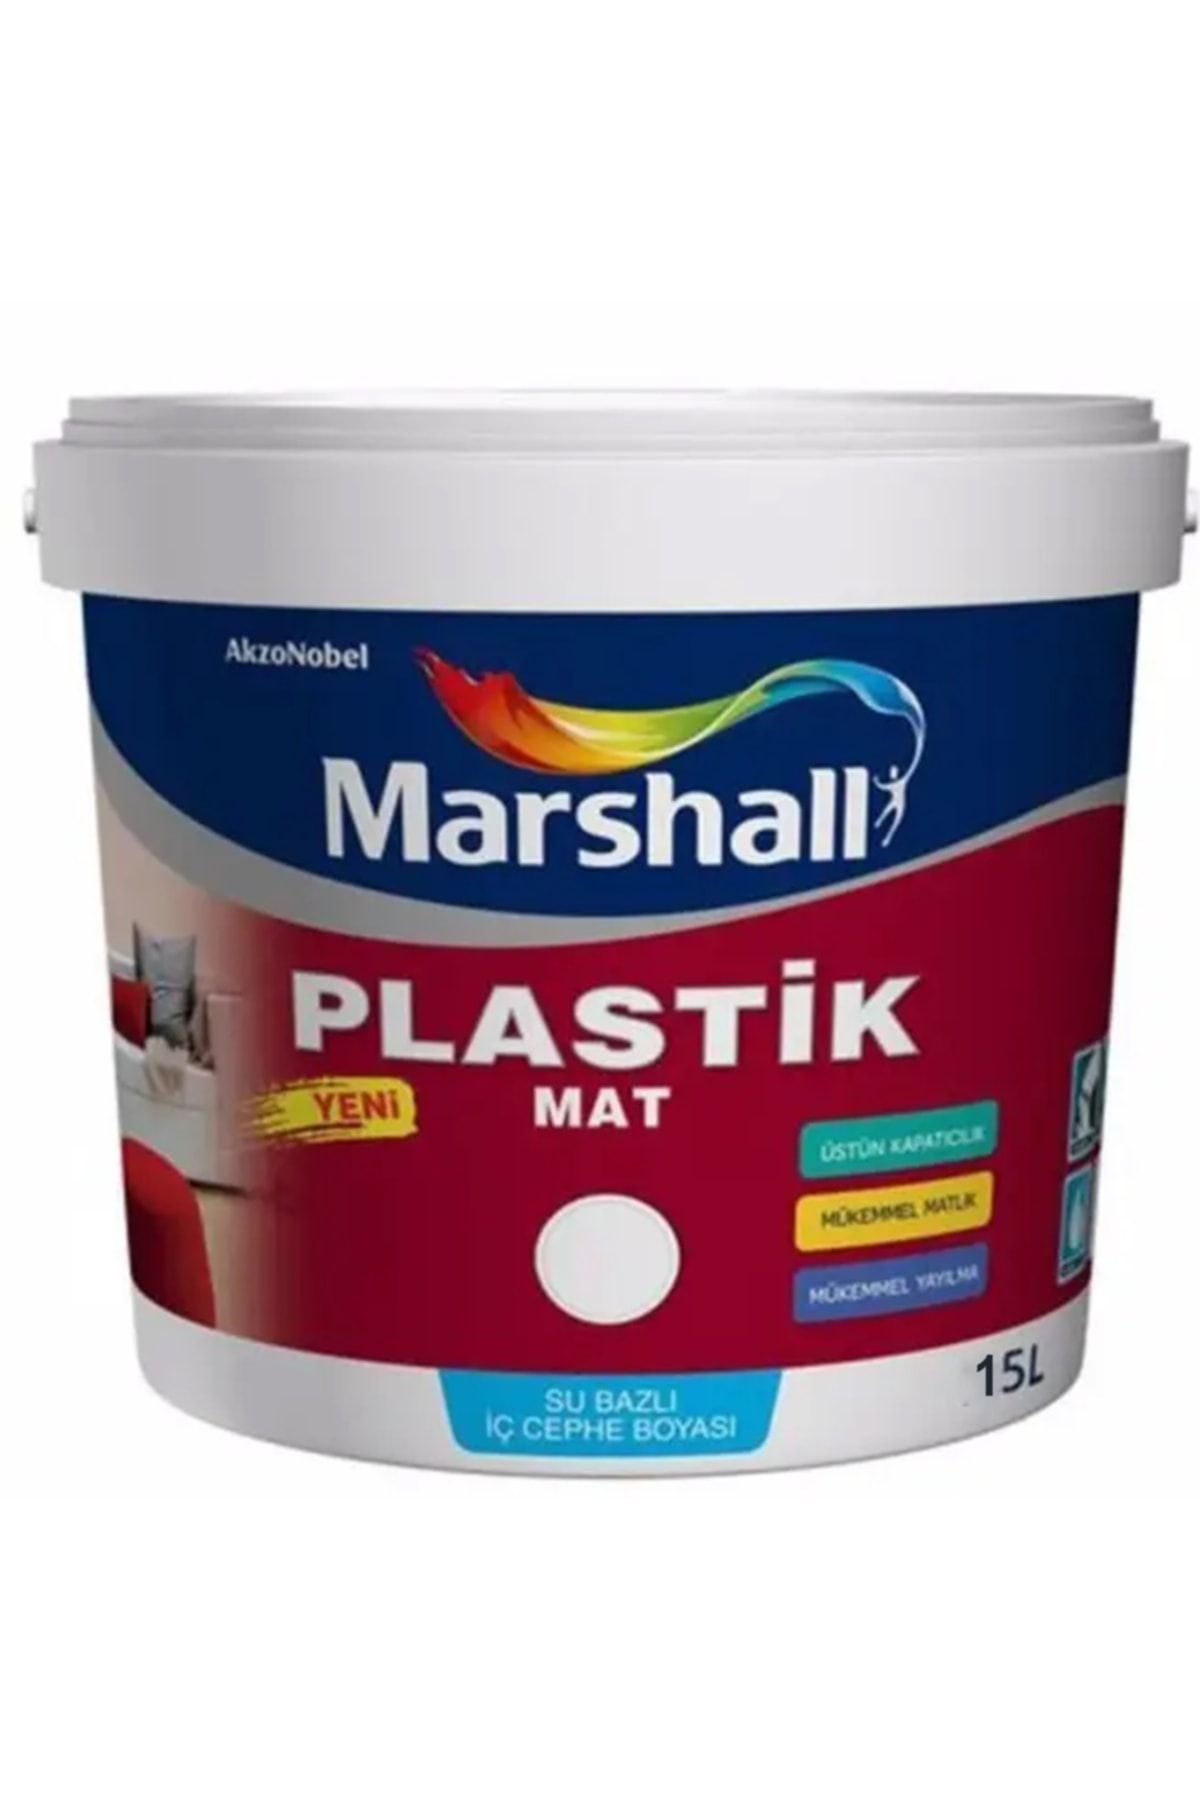 Marshall Plastik Mat Silinebilir Iç Cephe Boyası Kilit Taşı 15 Lt (20 Kg)